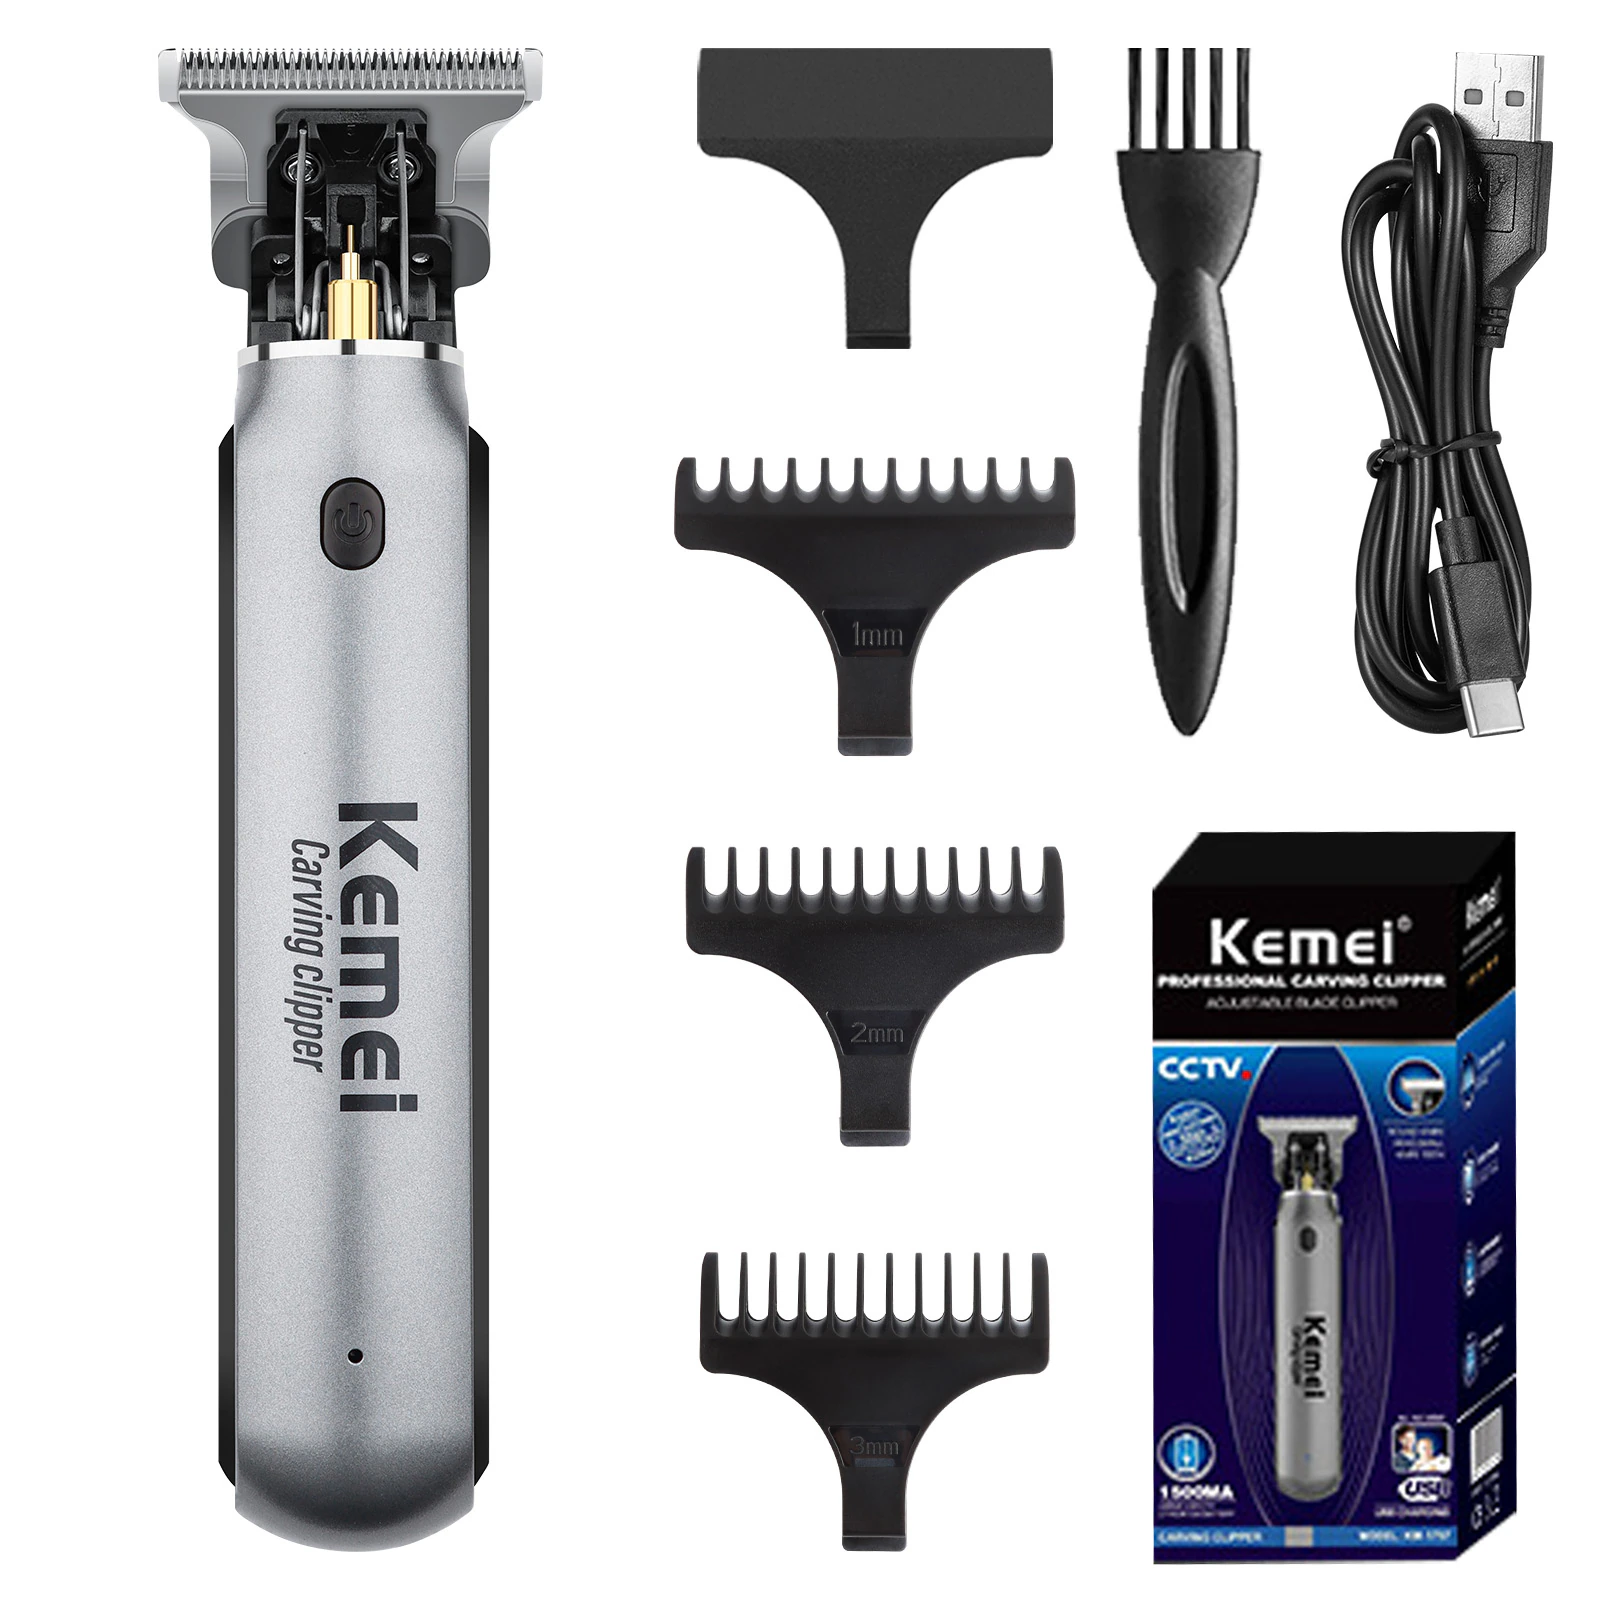 Kemei Hair Clipper Beard Trimmer for Men Electric Shaver Razor Hair Cutting Mach - $25.49 - $29.56